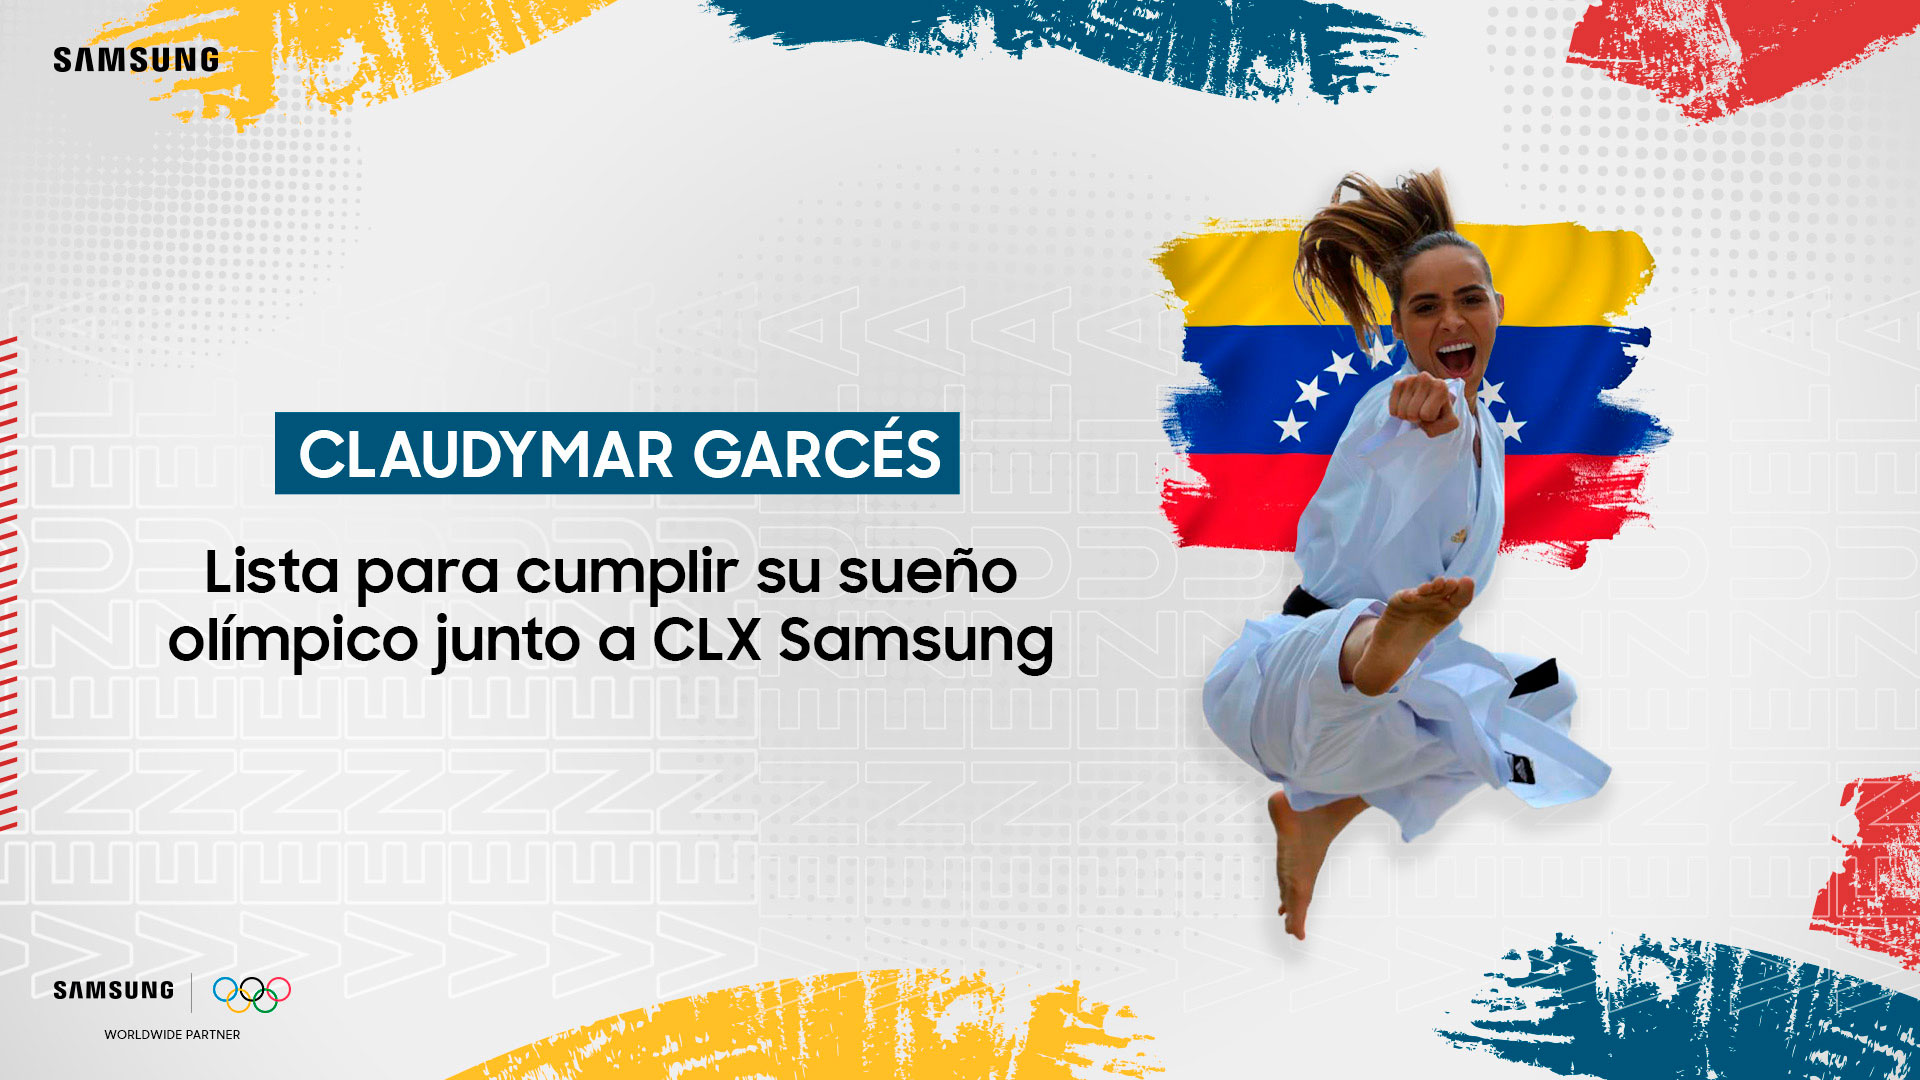 Claudymar Garcés lista para cumplir su sueño olímpico junto a CLX Samsun